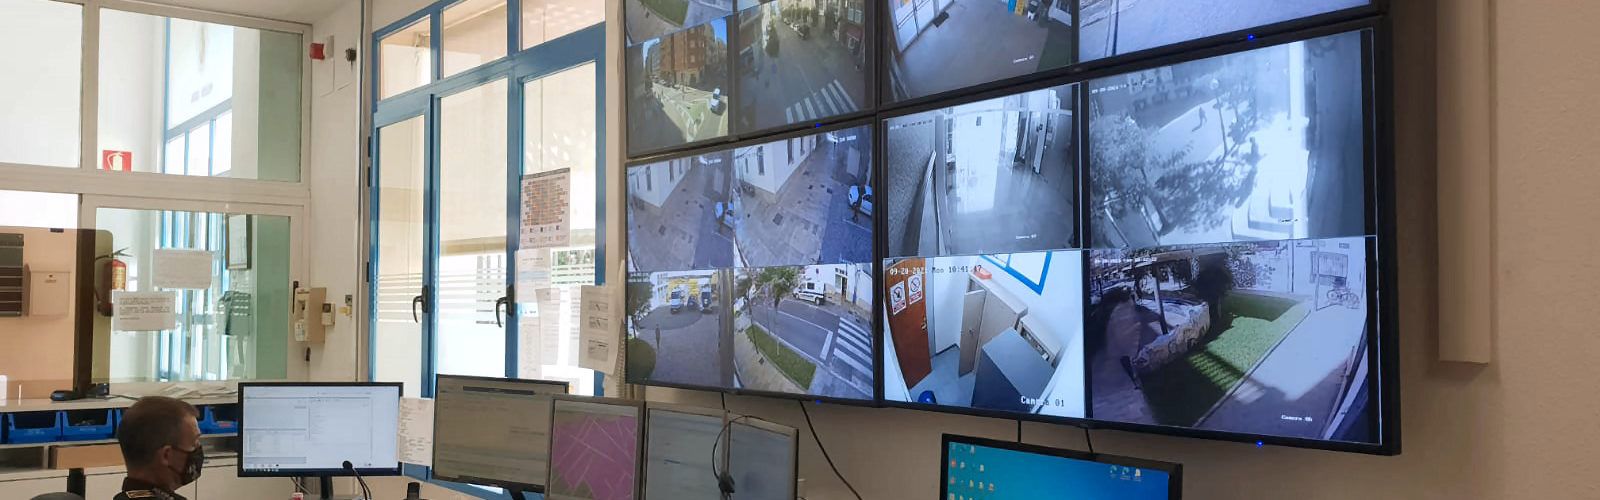 L’Ajuntament desplega una xarxa de càmeres de vigilància a la ciutat